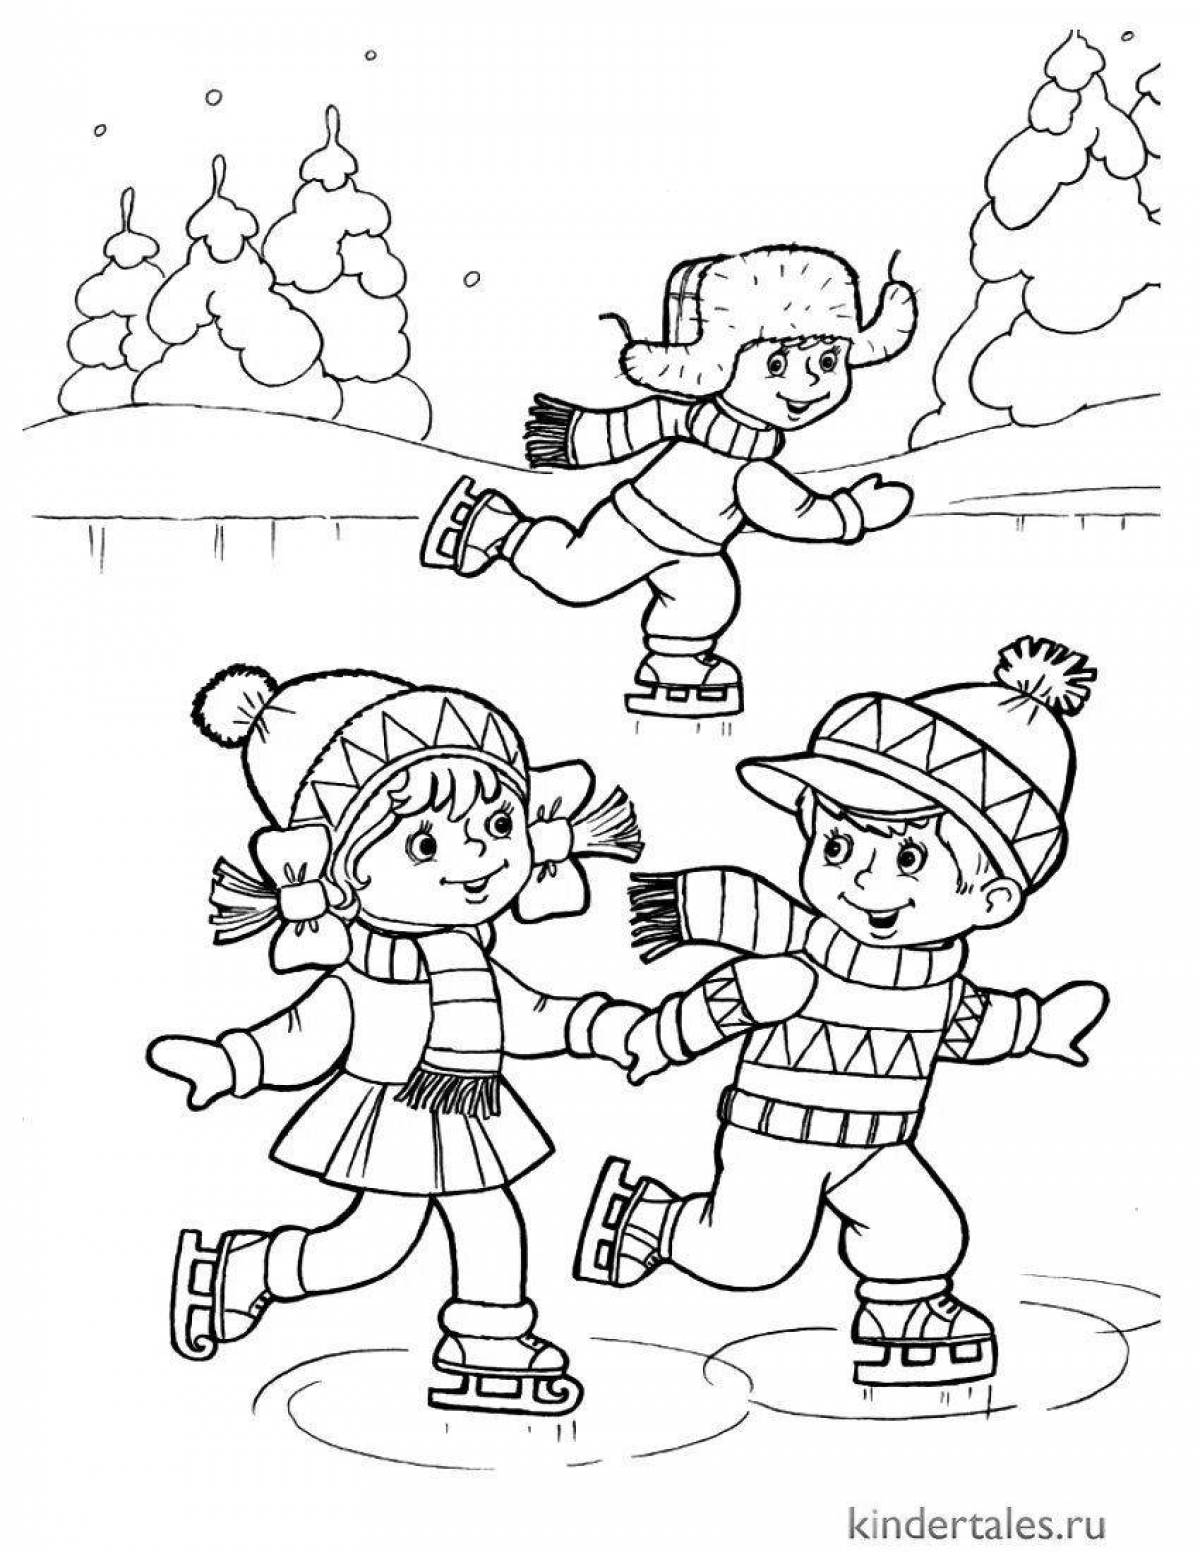 Креативная раскраска зимние забавы для детей 3-4 лет в детском саду